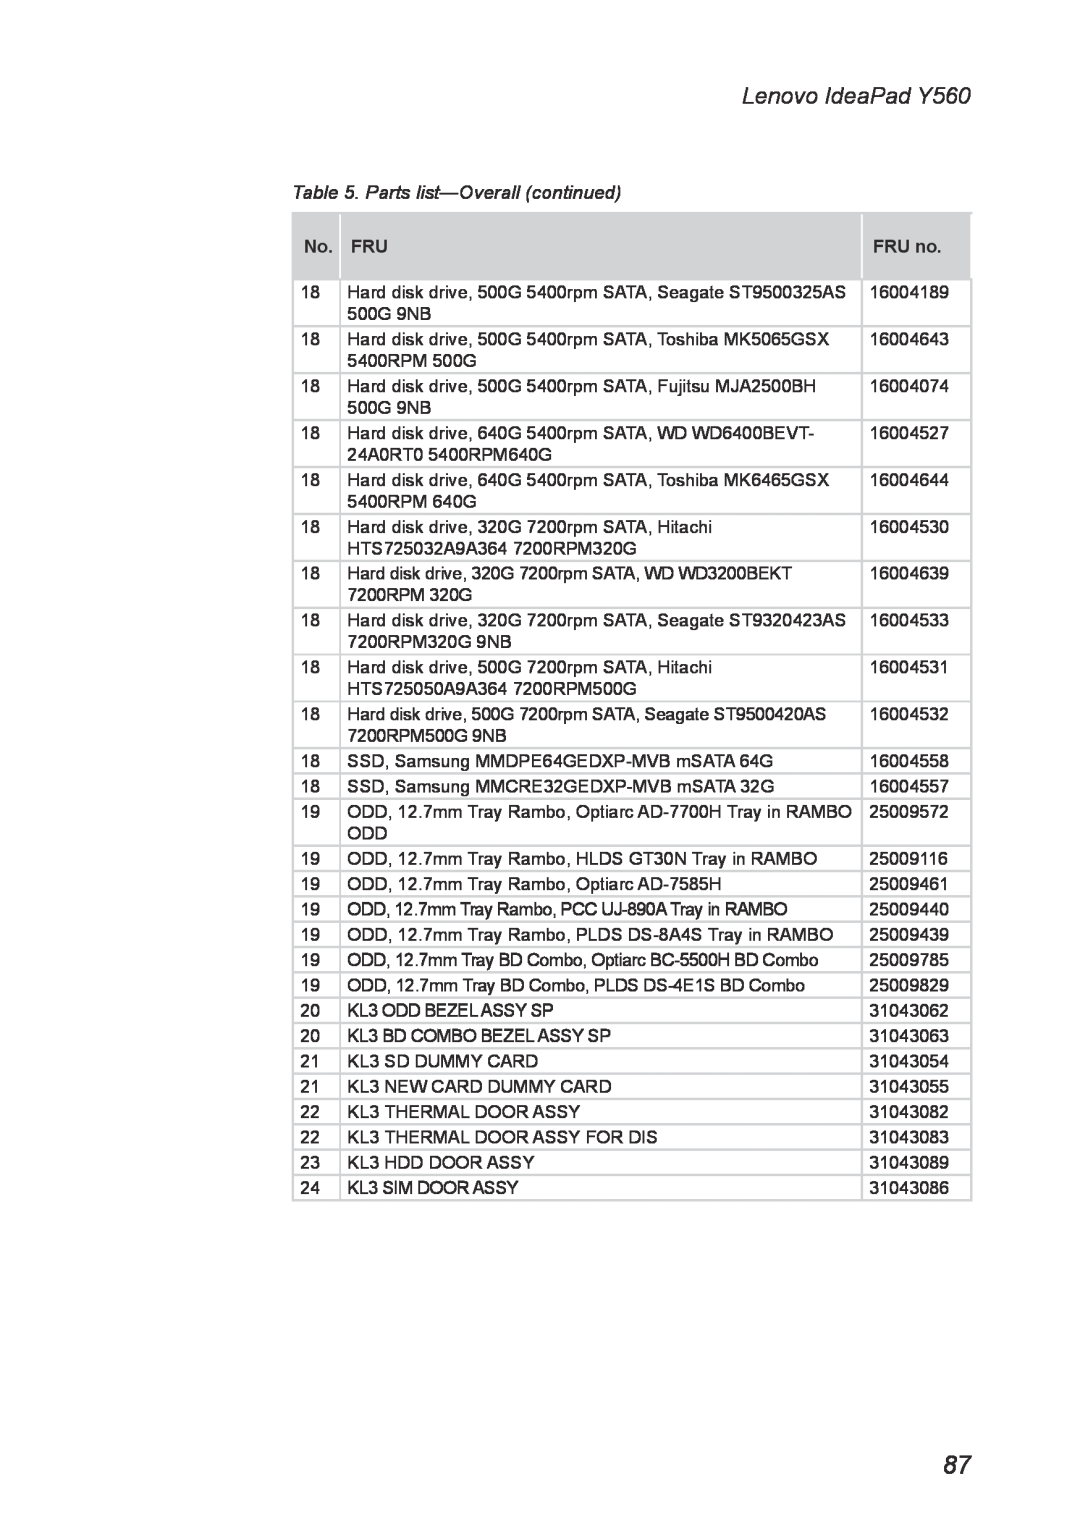 Lenovo manual Lenovo IdeaPad Y560, Parts list-Overall continued, No. FRU, FRU no 